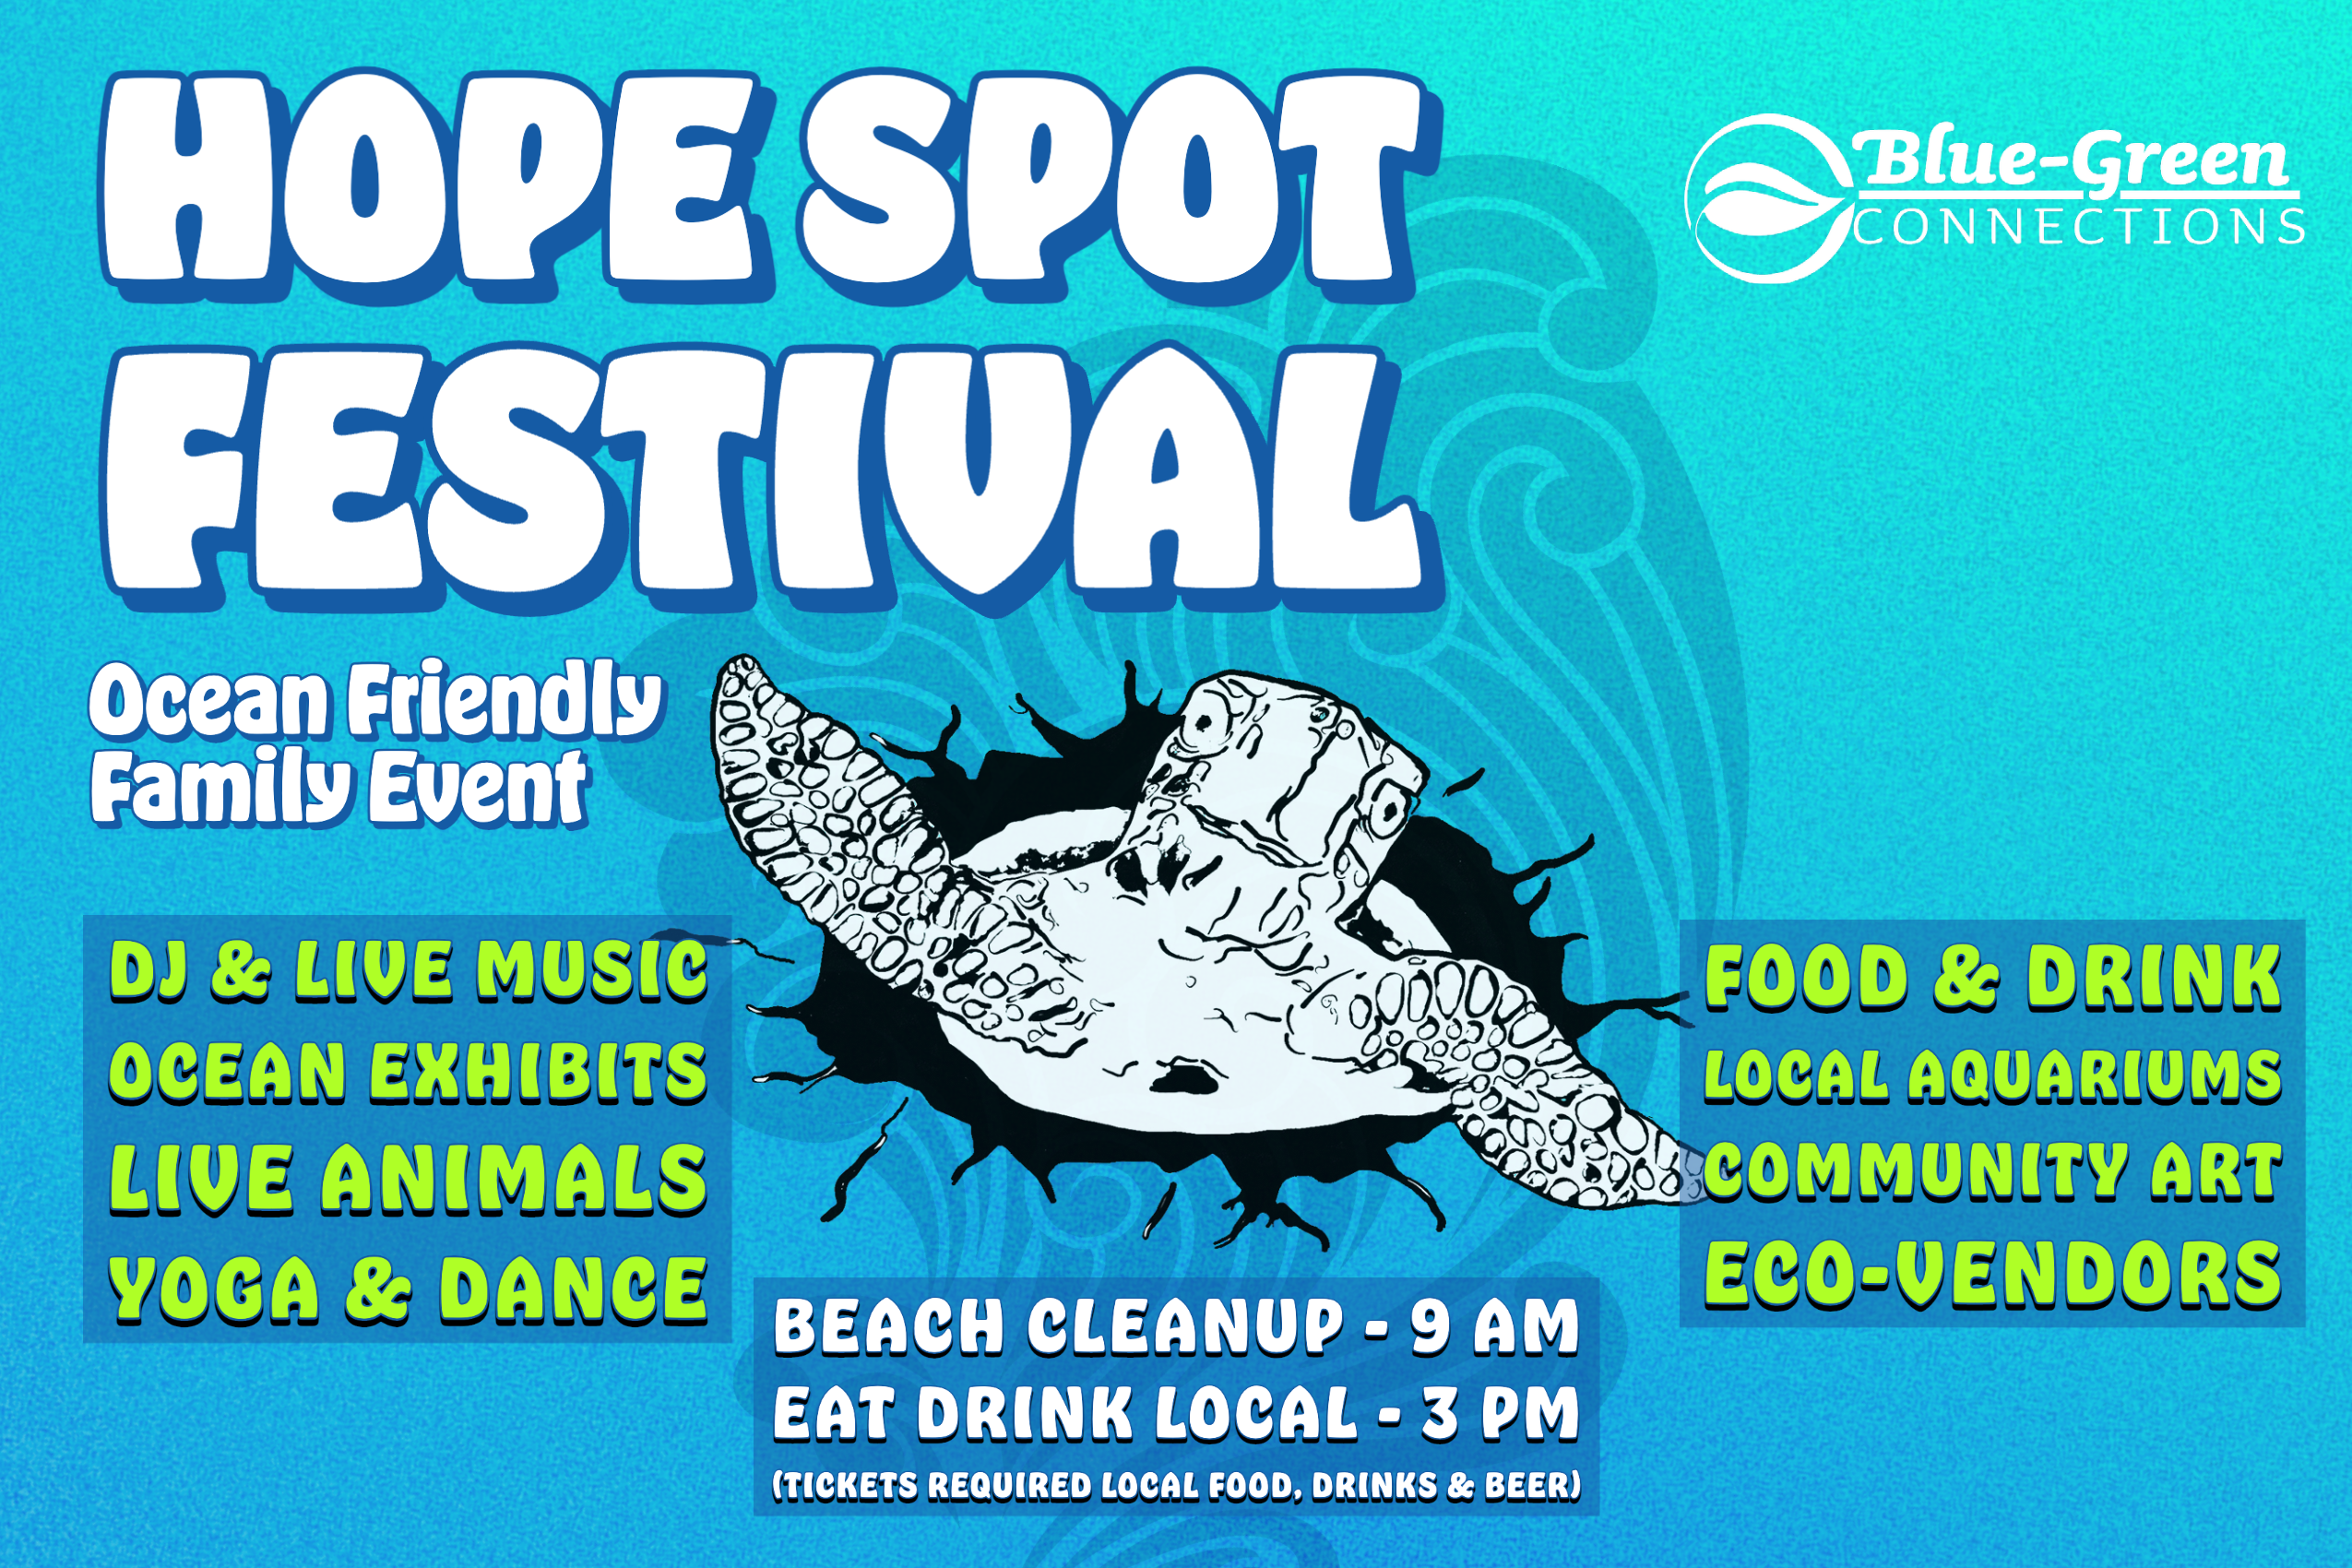 Hope Spot Festival for all 410x230px-1